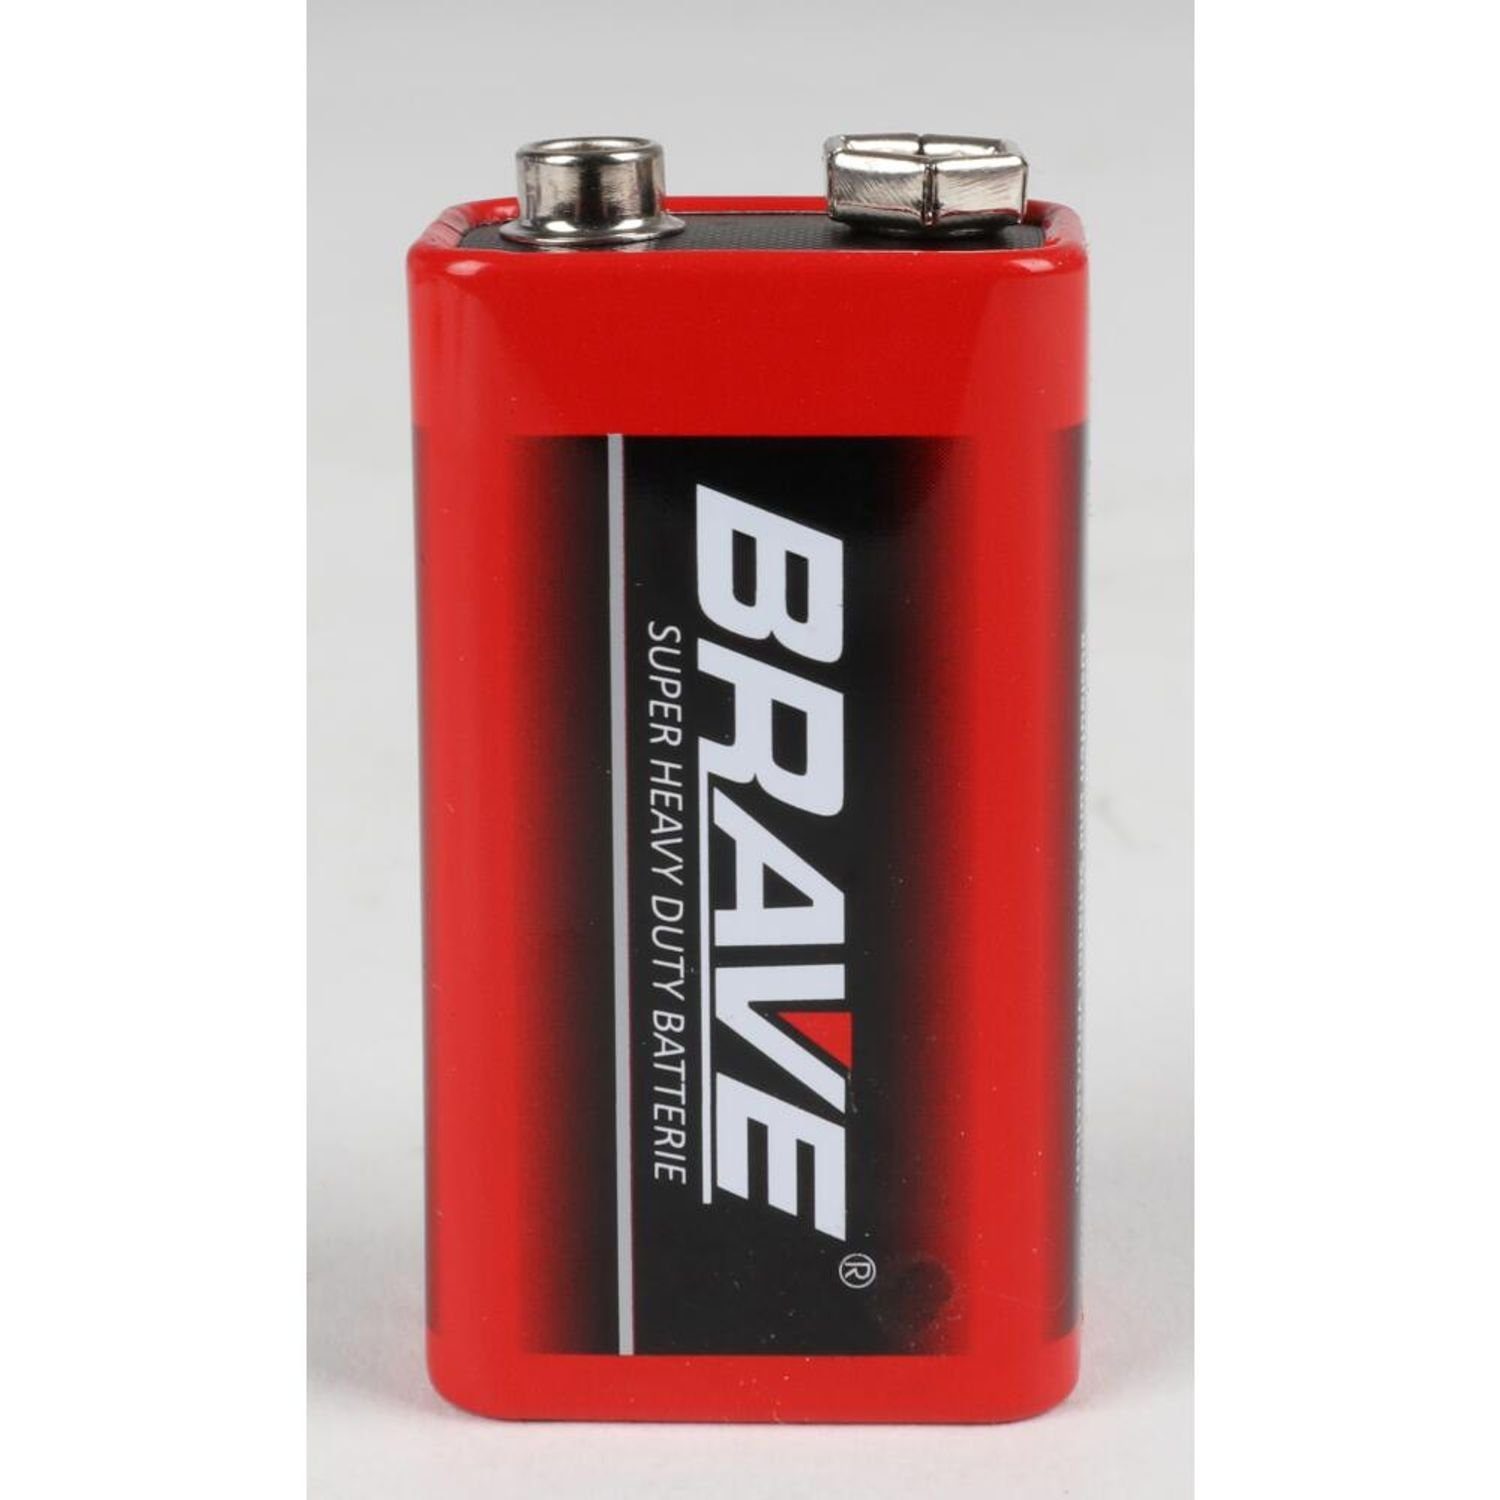 Brave Strom (20 BURI Universal 9V 10x Stark 6F22 Batterien St) Industrial Super 2er Batterie,